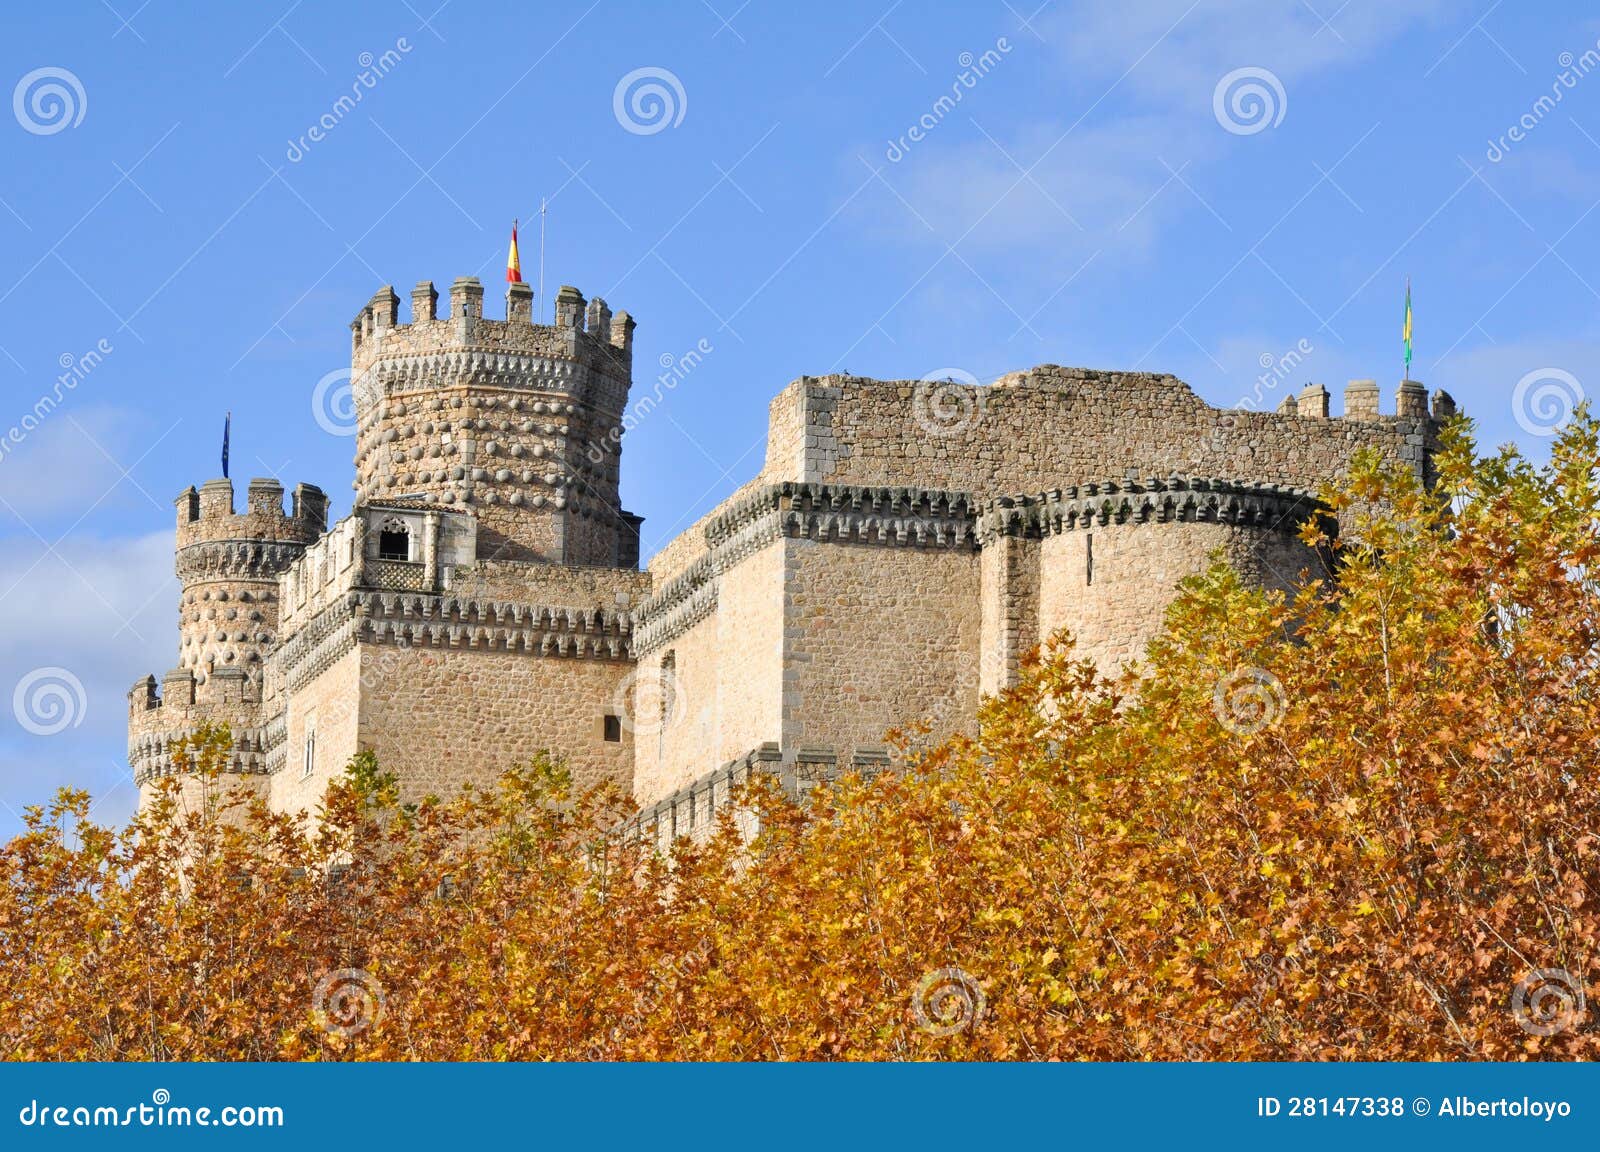 castle of manzanares el real, madrid, spain